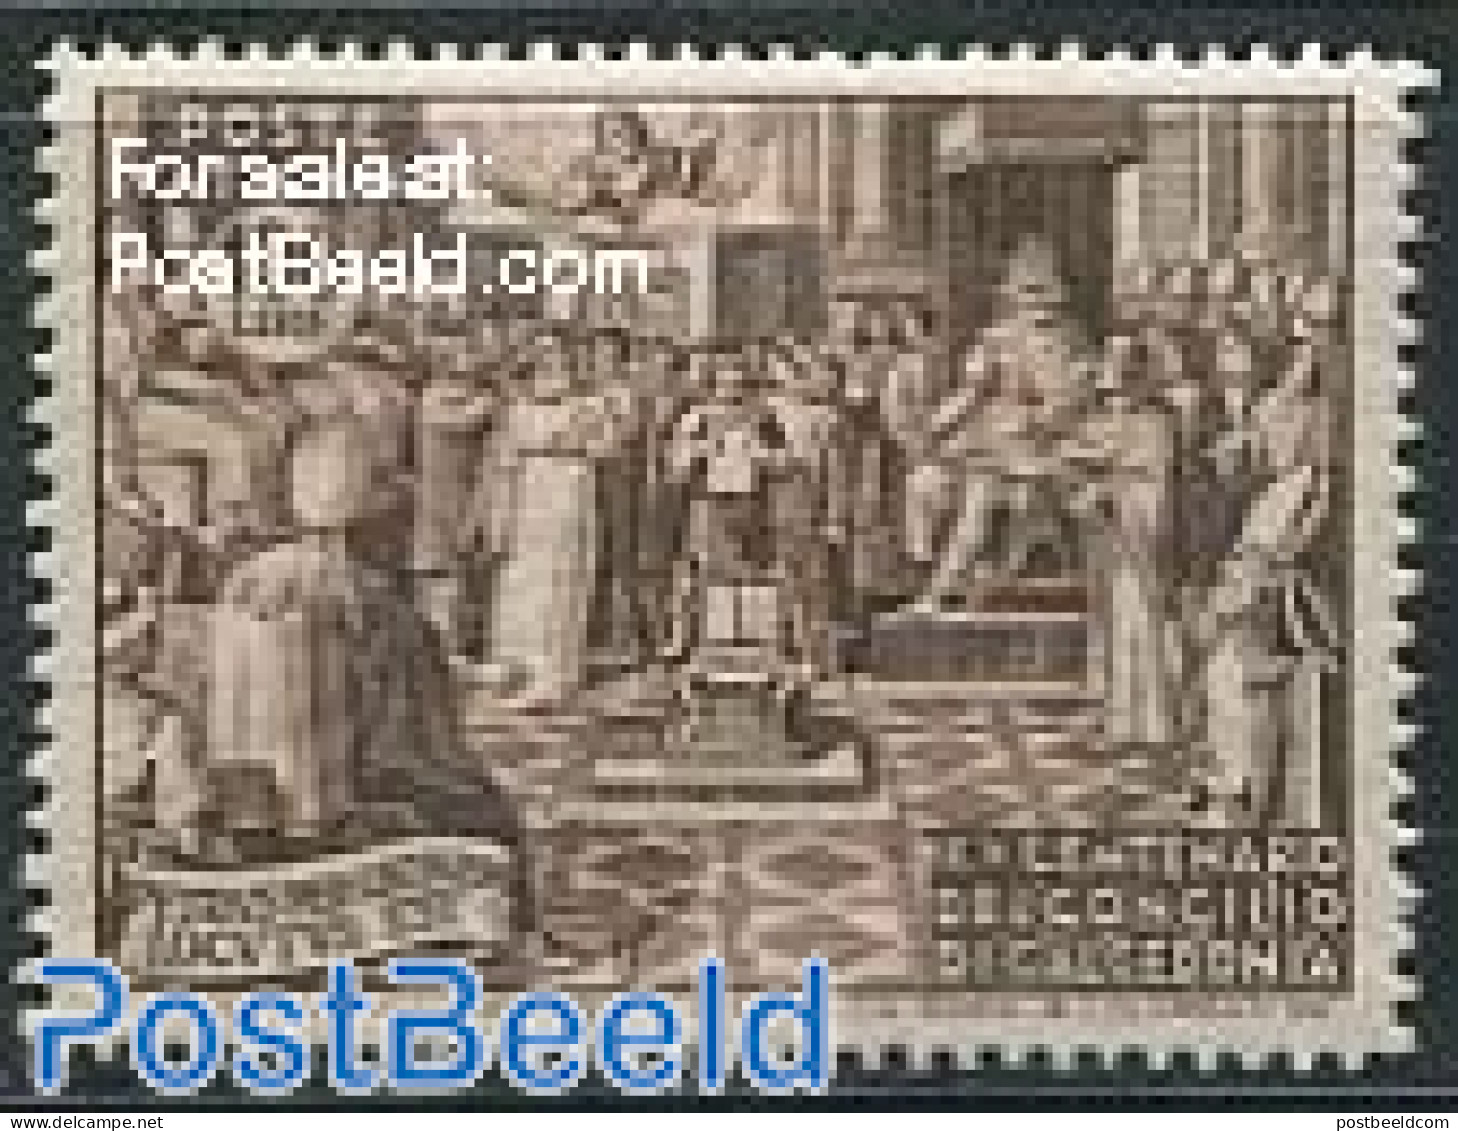 Vatican 1951 100L, Stamp Out Of Set, Unused (hinged) - Ongebruikt